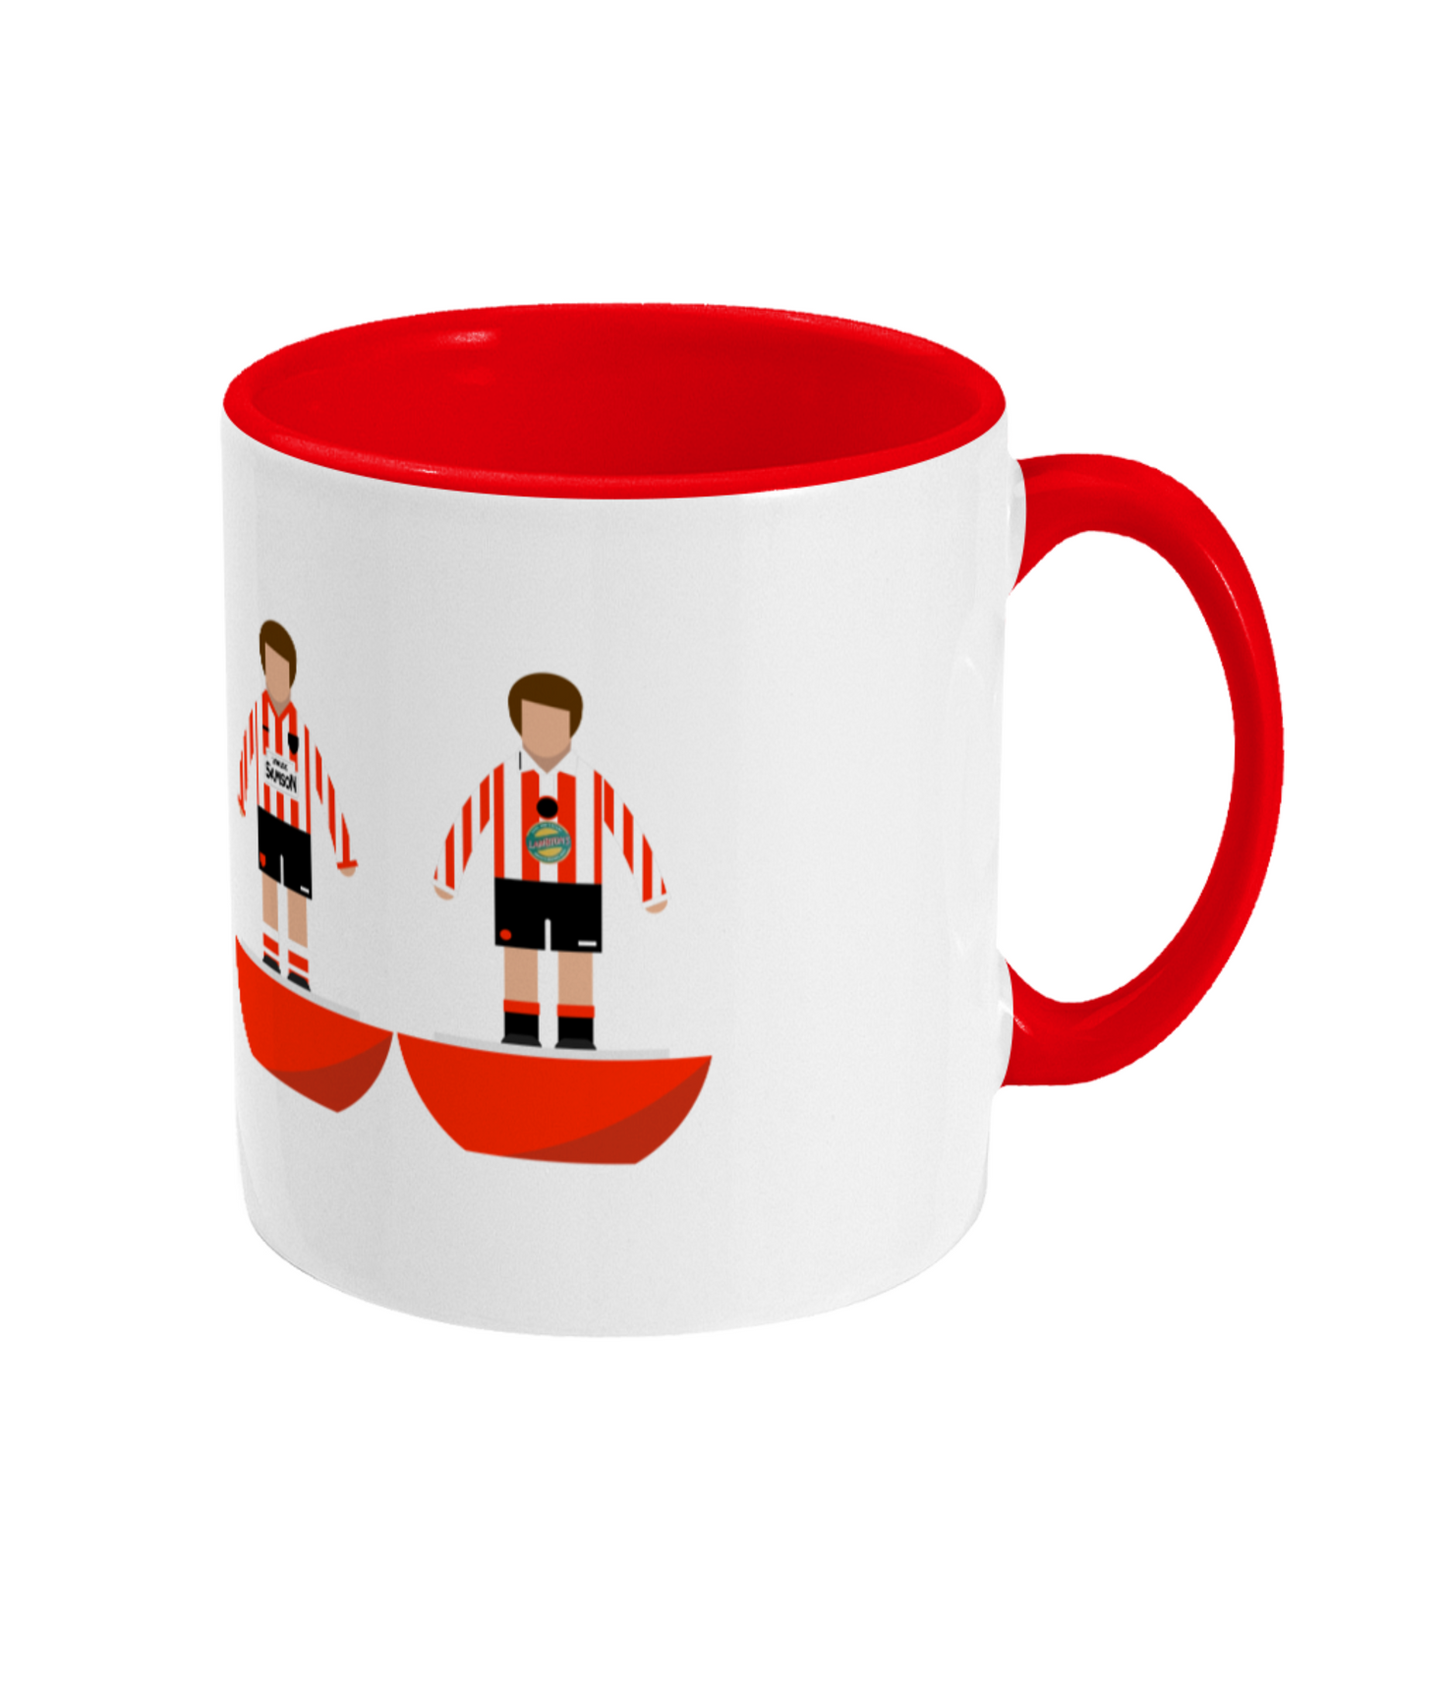 Football Kits 'Sunderland combined' Mug